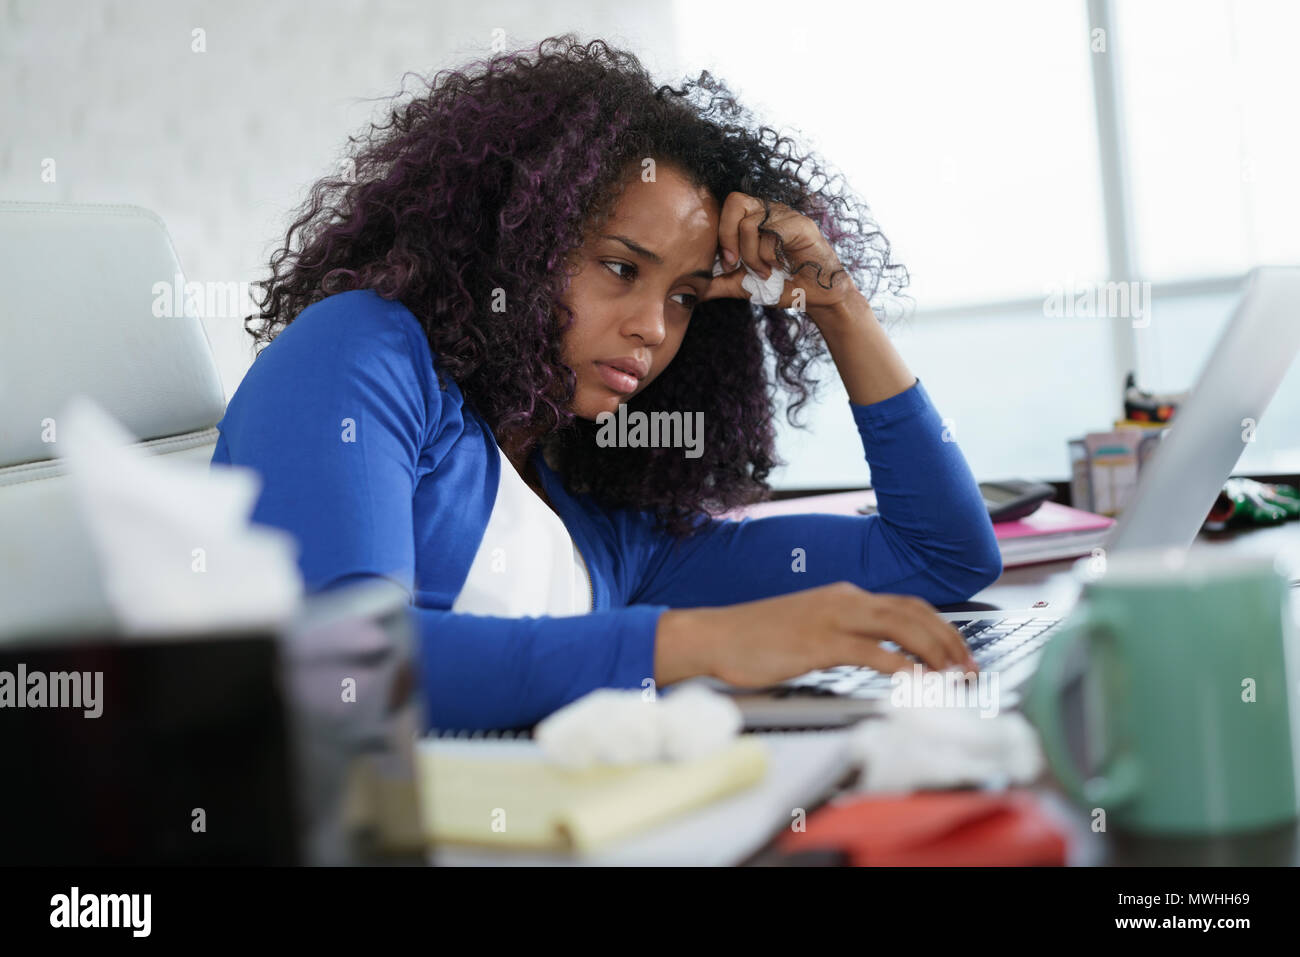 Enfermos African American Girl trabaja desde la oficina en casa. Malos joven negra con frío, sentado en un escritorio con ordenador portátil y estornudos de alergia. Foto de stock